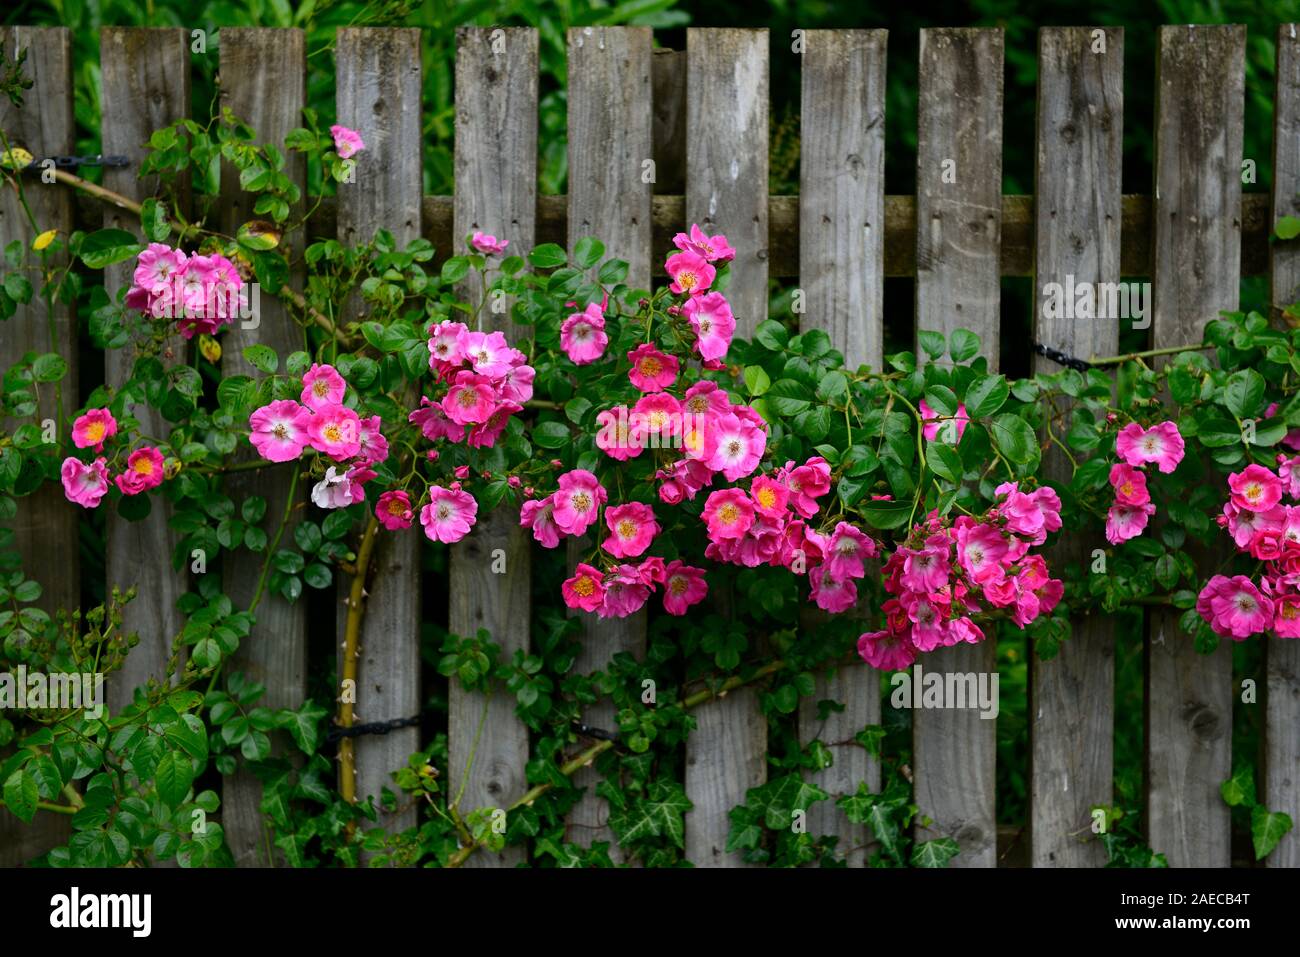 Rosa amerikanischen Säule, Rose amerikanischen Säule, Holzzaun, tiefe  Carmine - rosa Blüten, weißen Augen, Rambler, Wanderungen, Abdeckung, die  hölzernen Zaun, Blumen, Blume Stockfotografie - Alamy